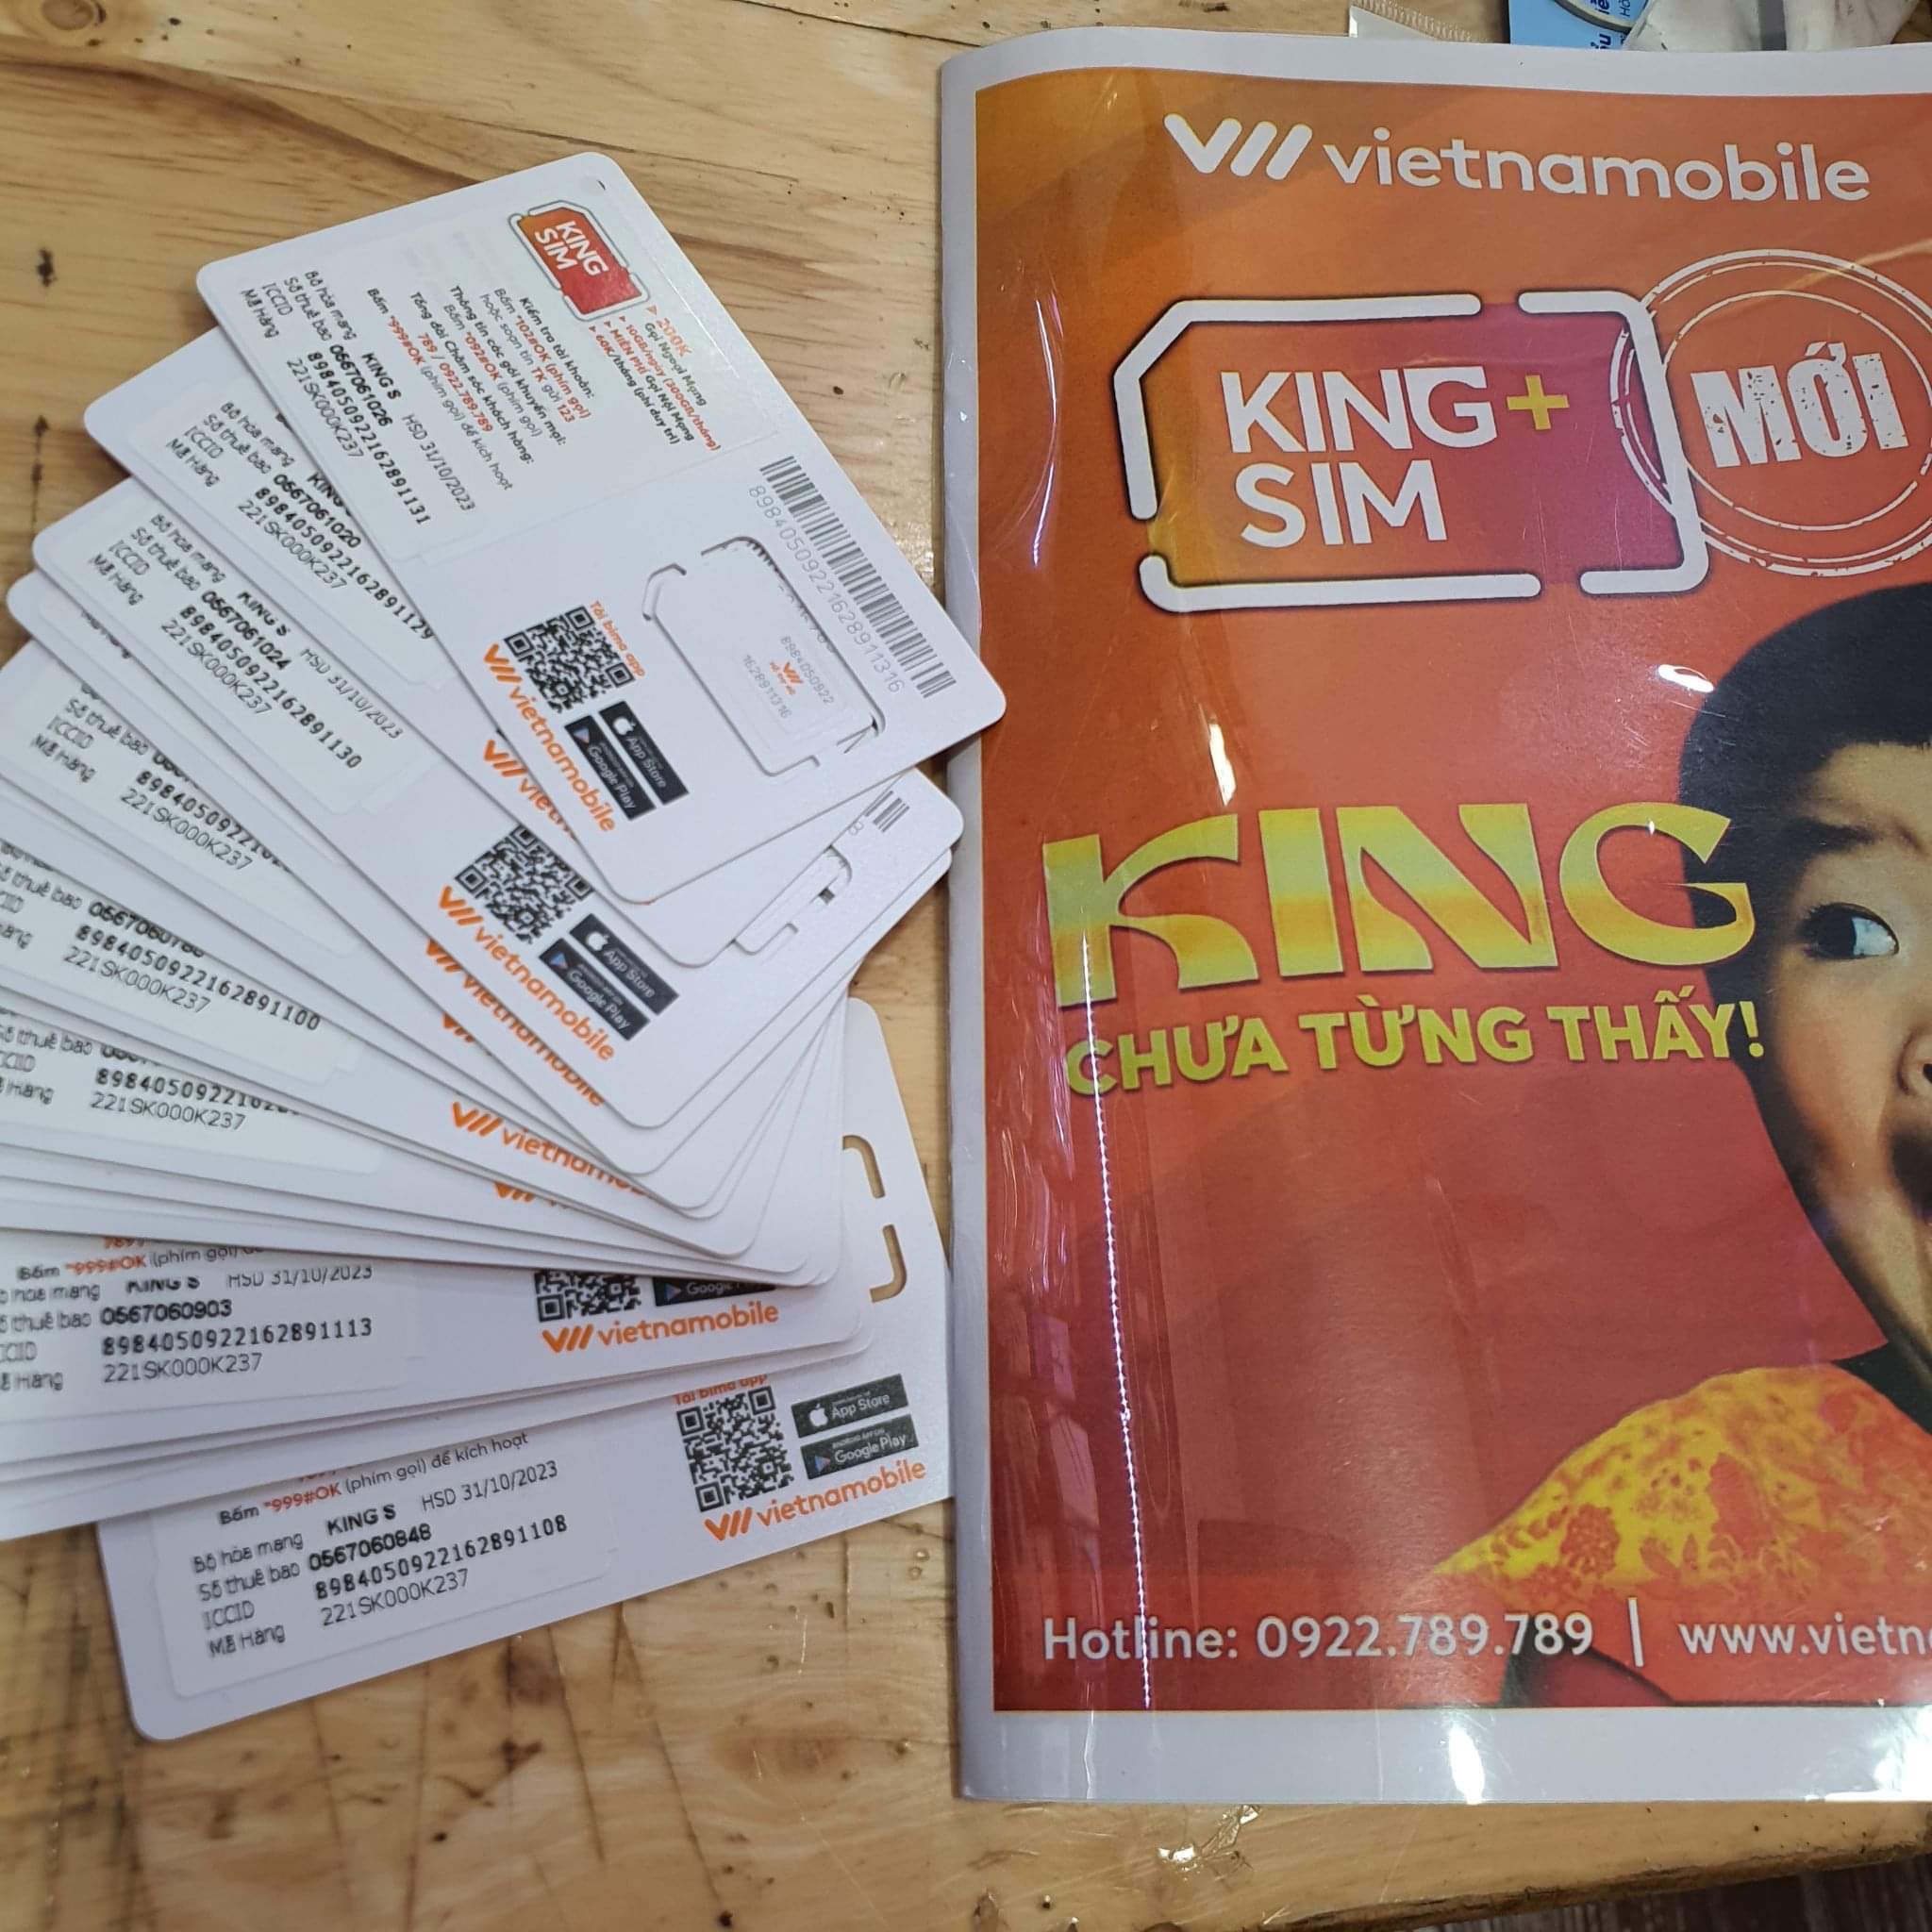 Sim 4g Vietnam Mobile King sim 10g/ngày 200k nội mạng tháng nạp 60k